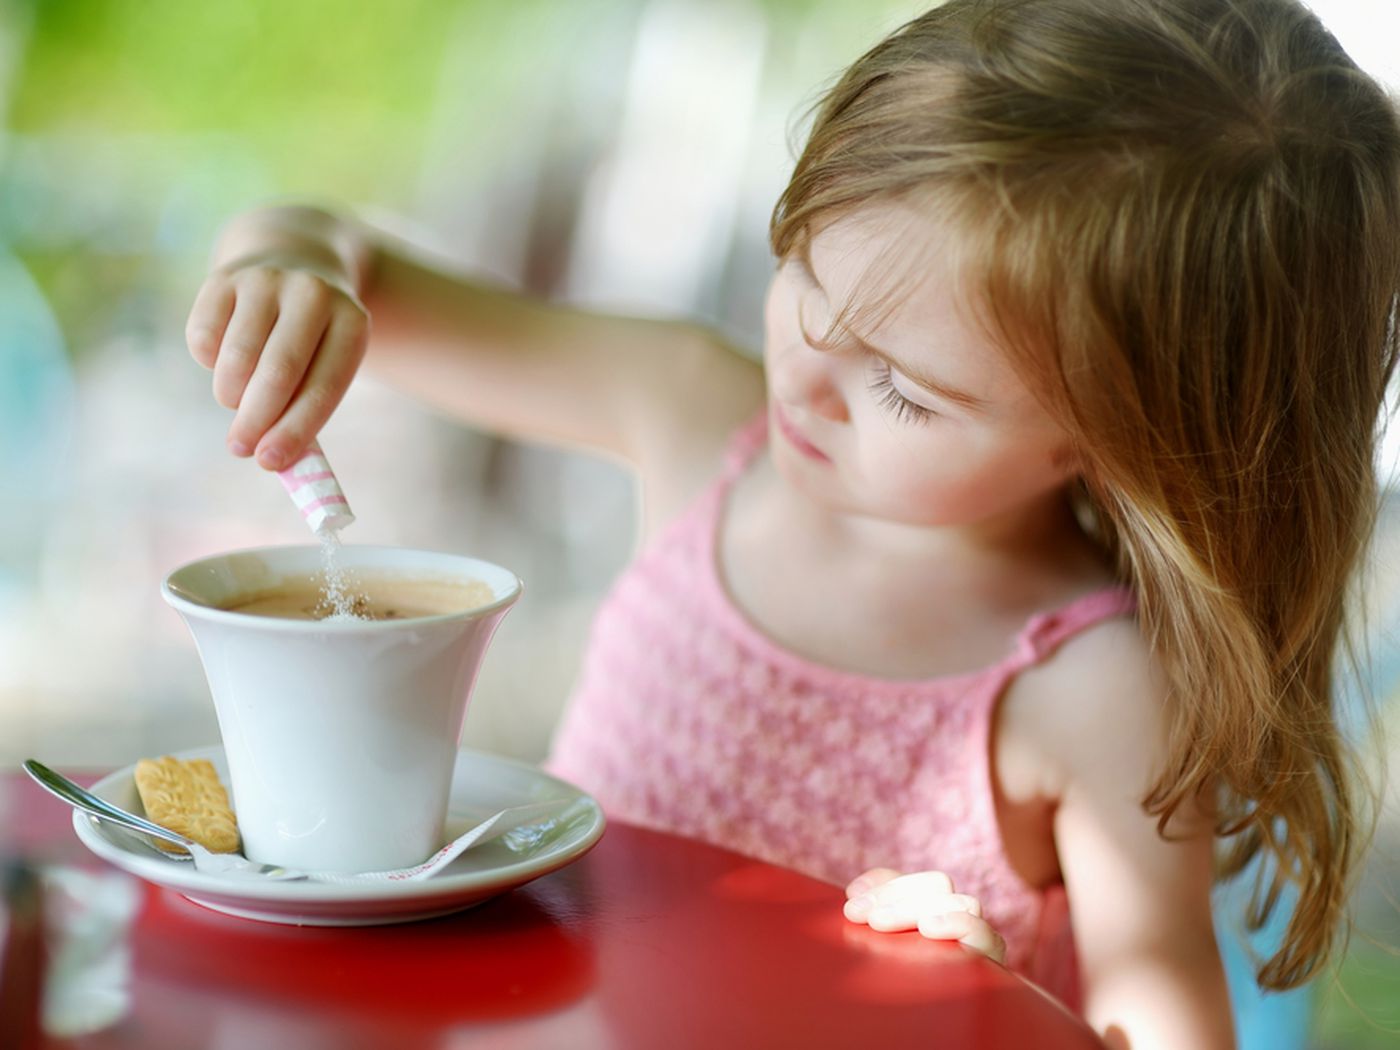 کودکان در چه سنی می توانند کافئین مصرف کنند؟